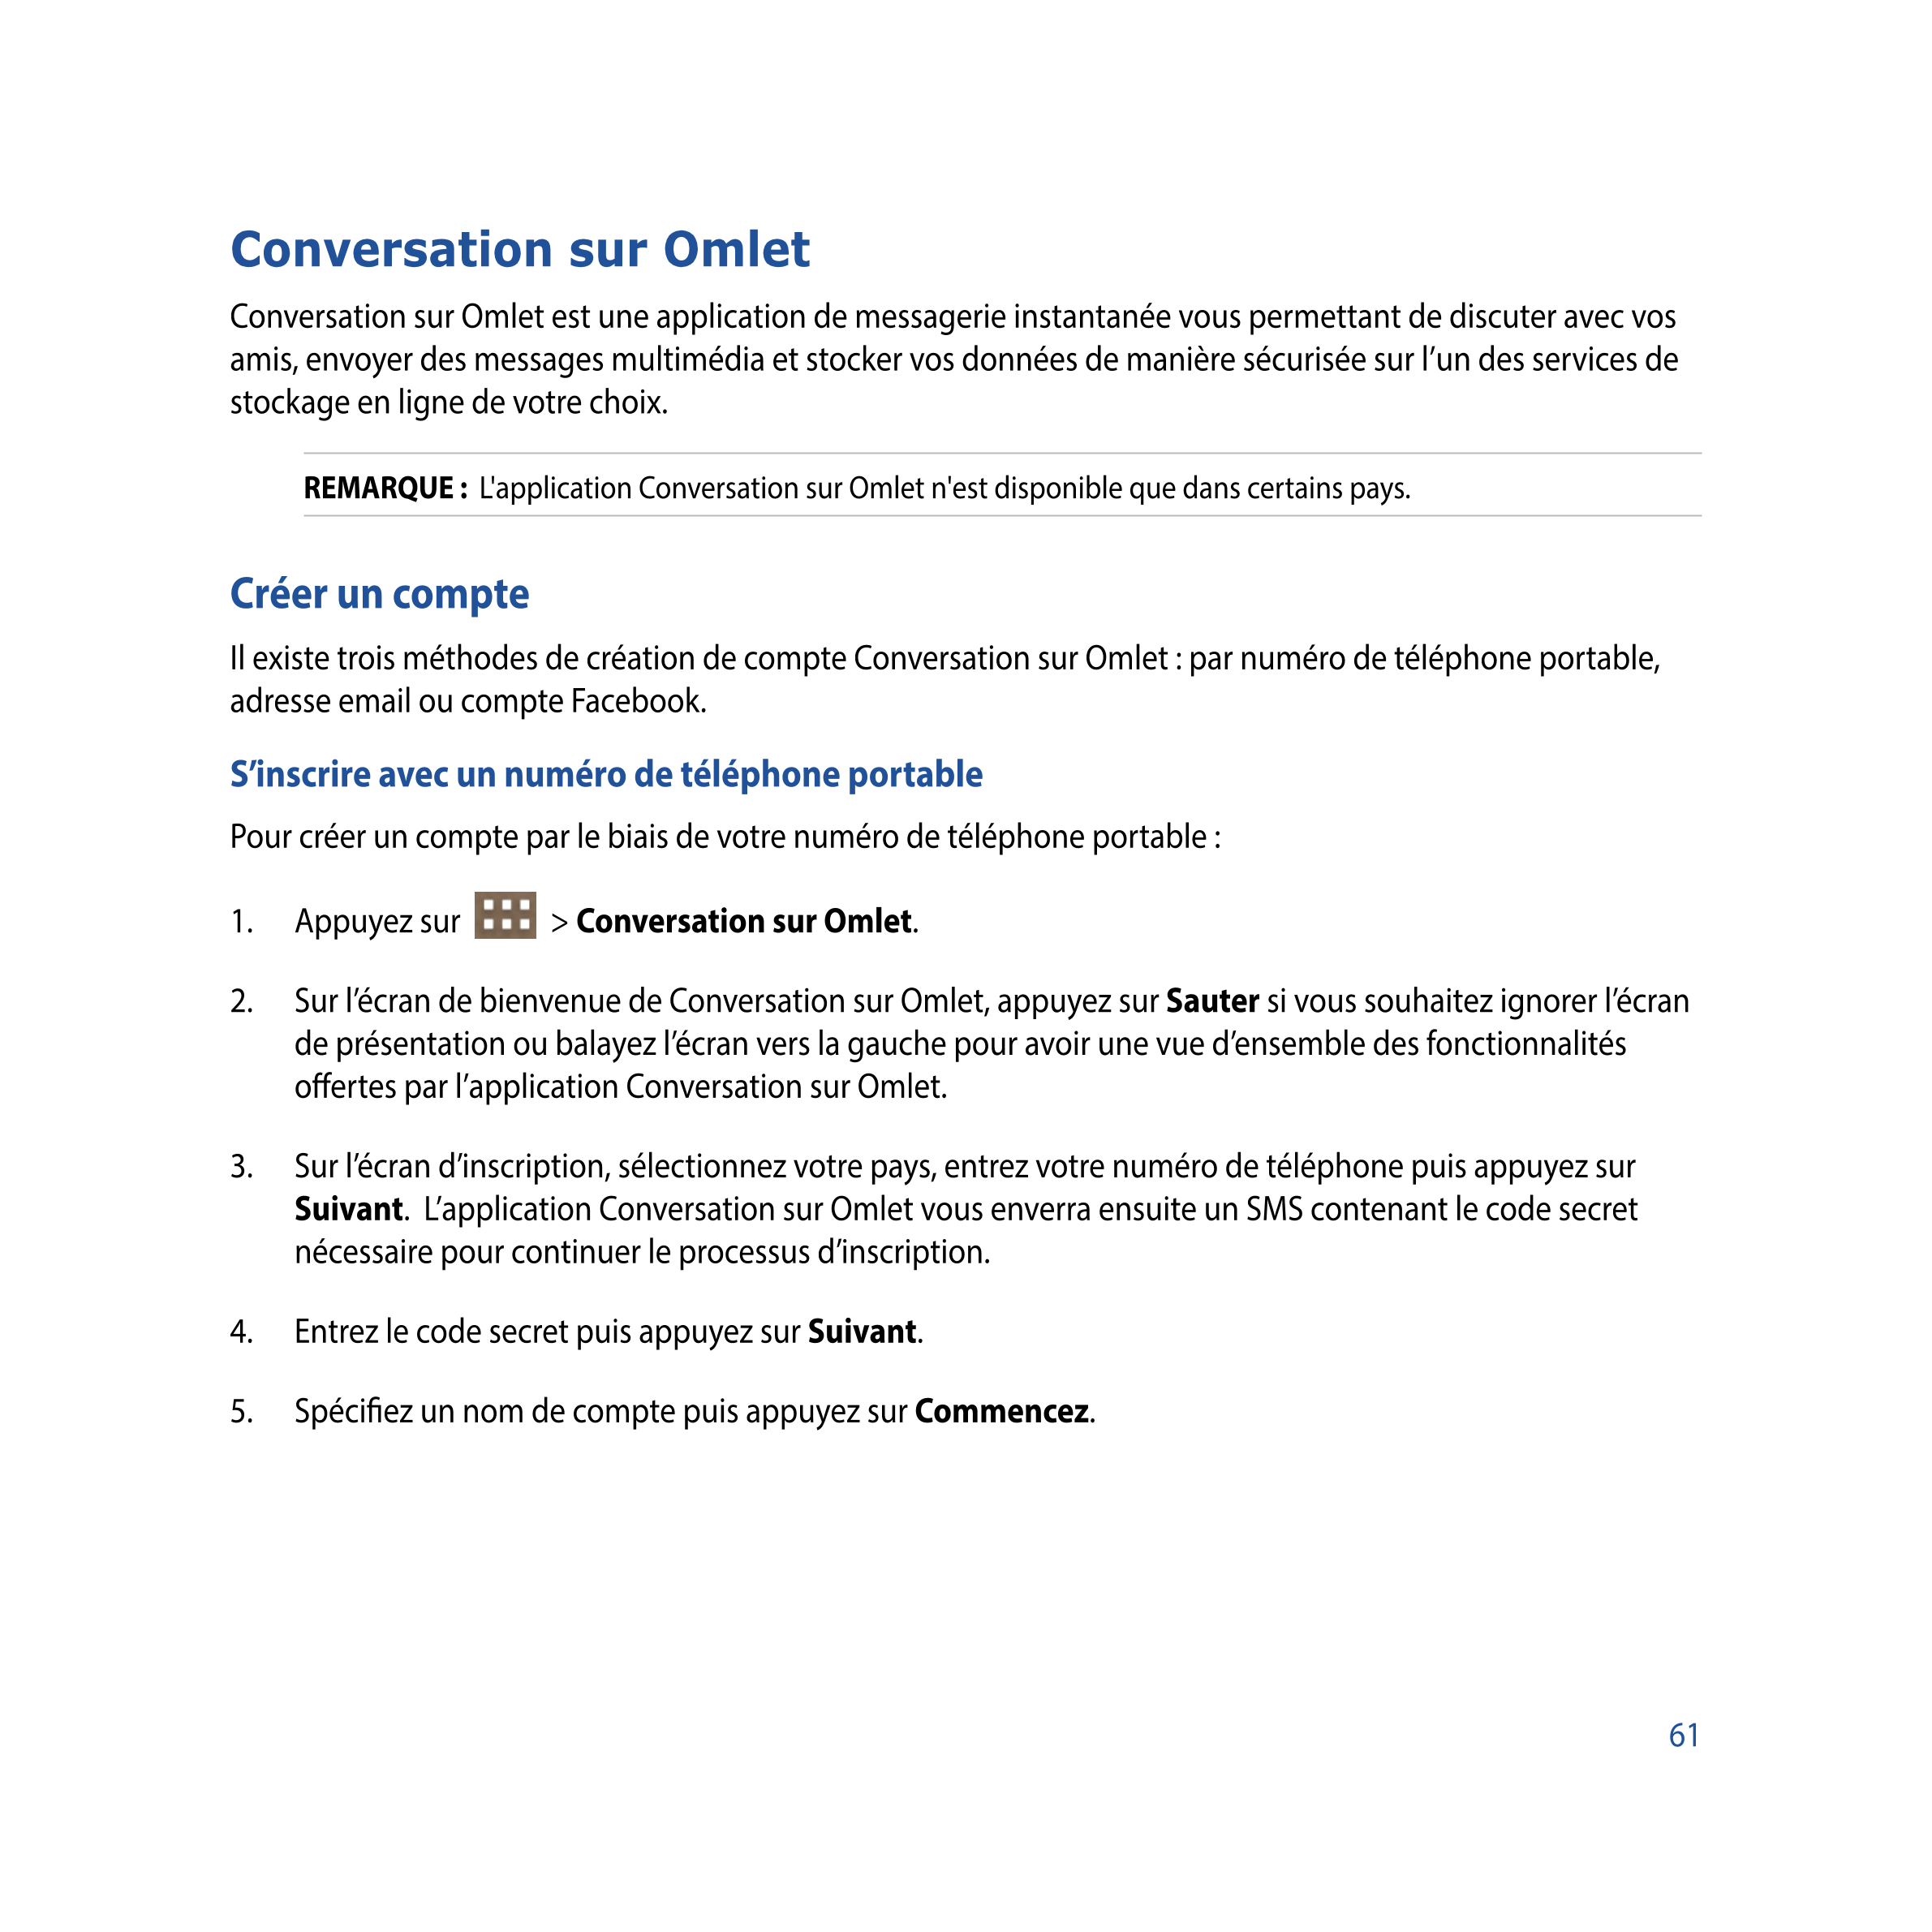 Conversation sur Omlet
Conversation sur Omlet est une application de messagerie instantanée vous permettant de discuter avec vos